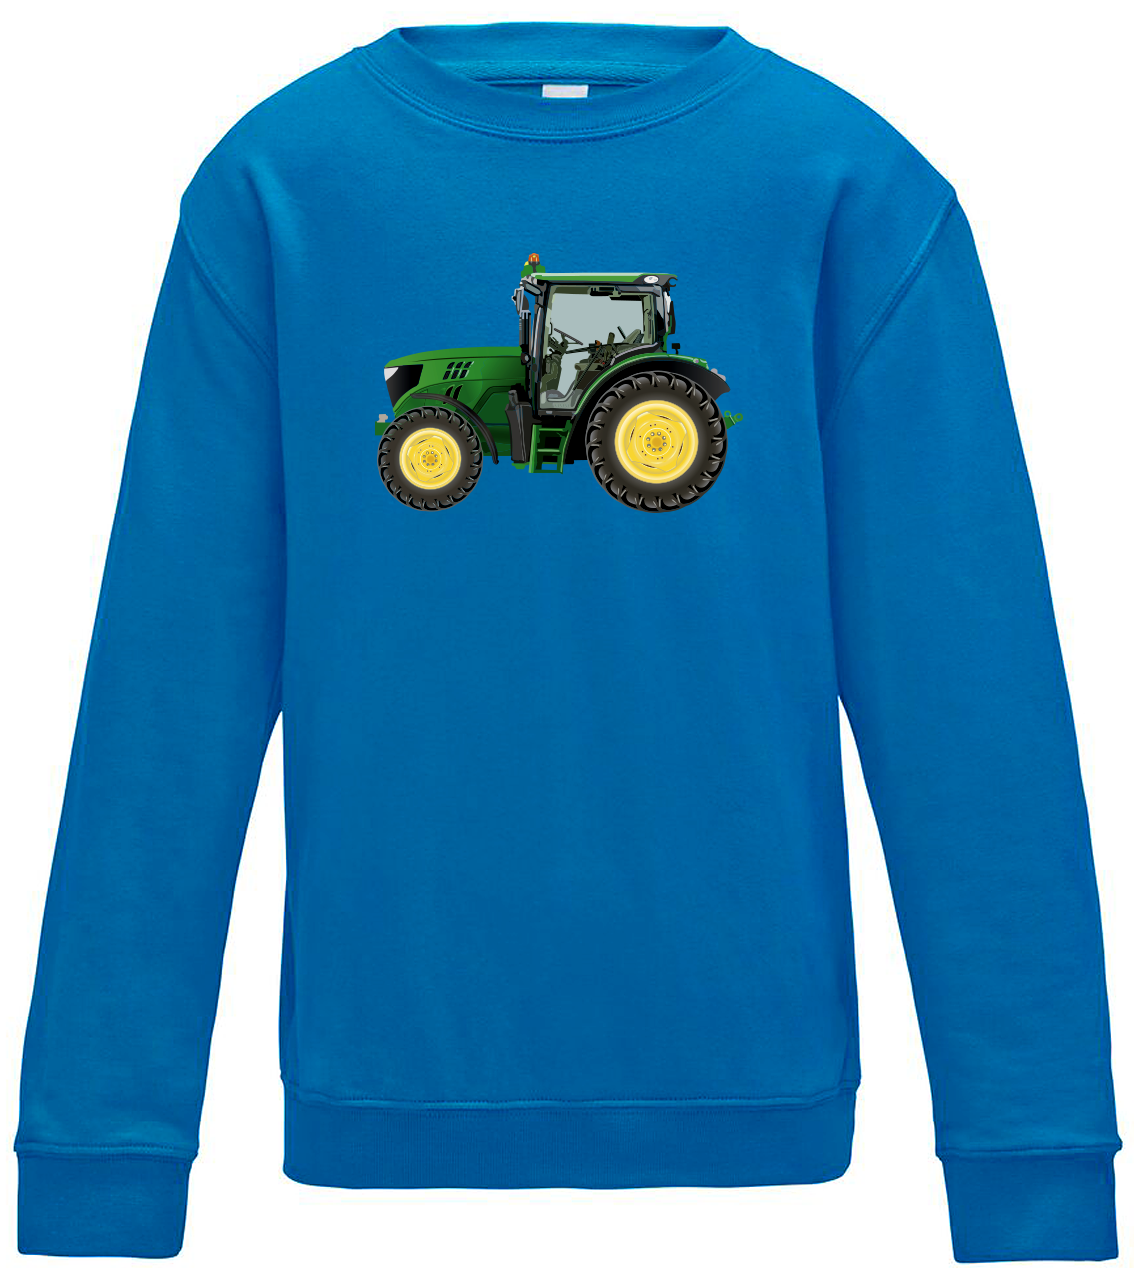 Dětská mikina s traktorem - Zelený traktor Velikost: 12/14 (152/164), Barva: Modrá